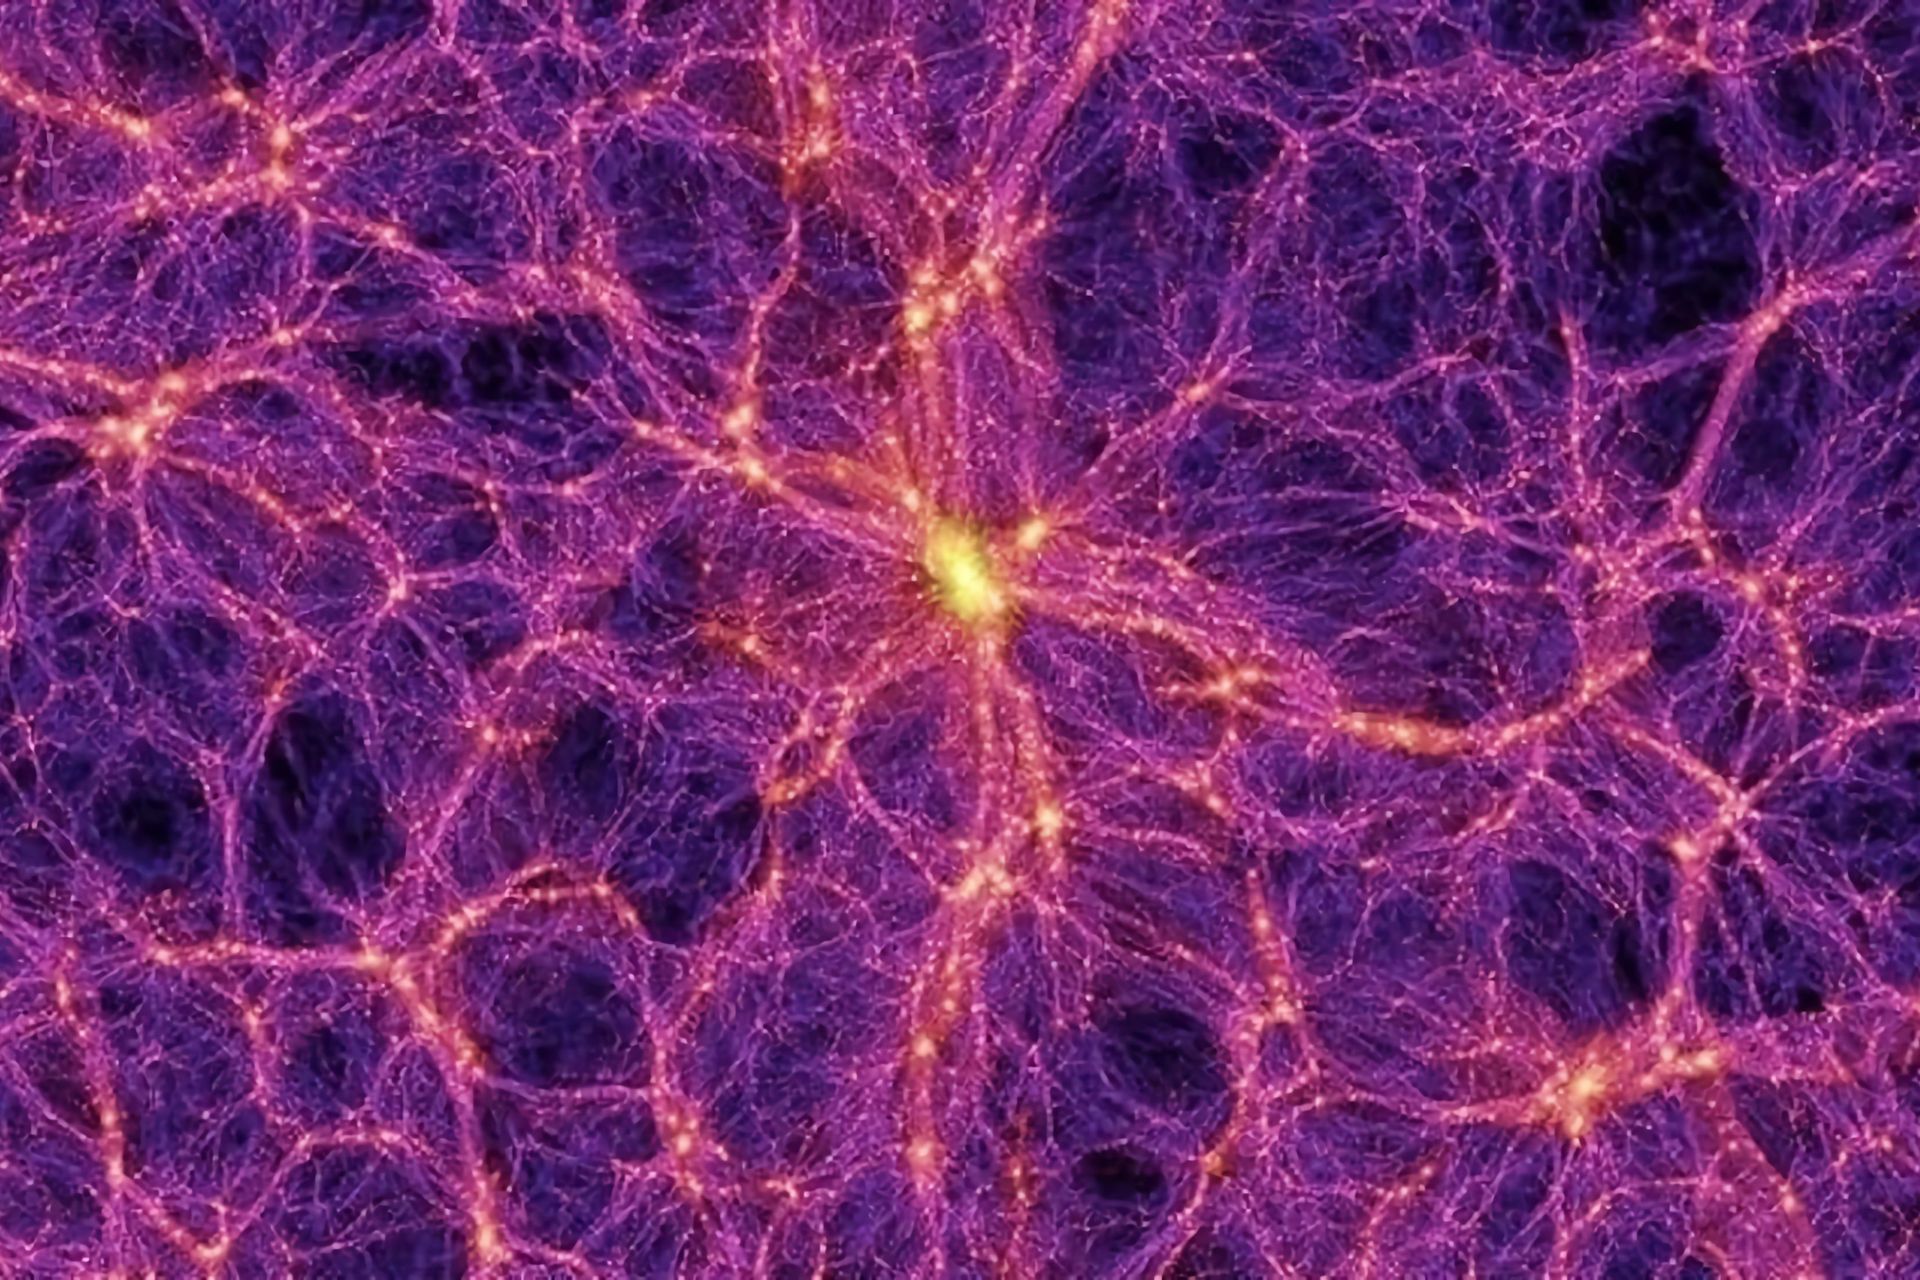 Ecco la “Rete Cosmica”, o “Cosmic Web”, la struttura generale del nostro universo, qui simulata da un supercomputer tenendo conto anche di materia ed energia oscura. Colpisce quanto assomigli alla struttura cellulare di un cervello: è il caos, bellezza!